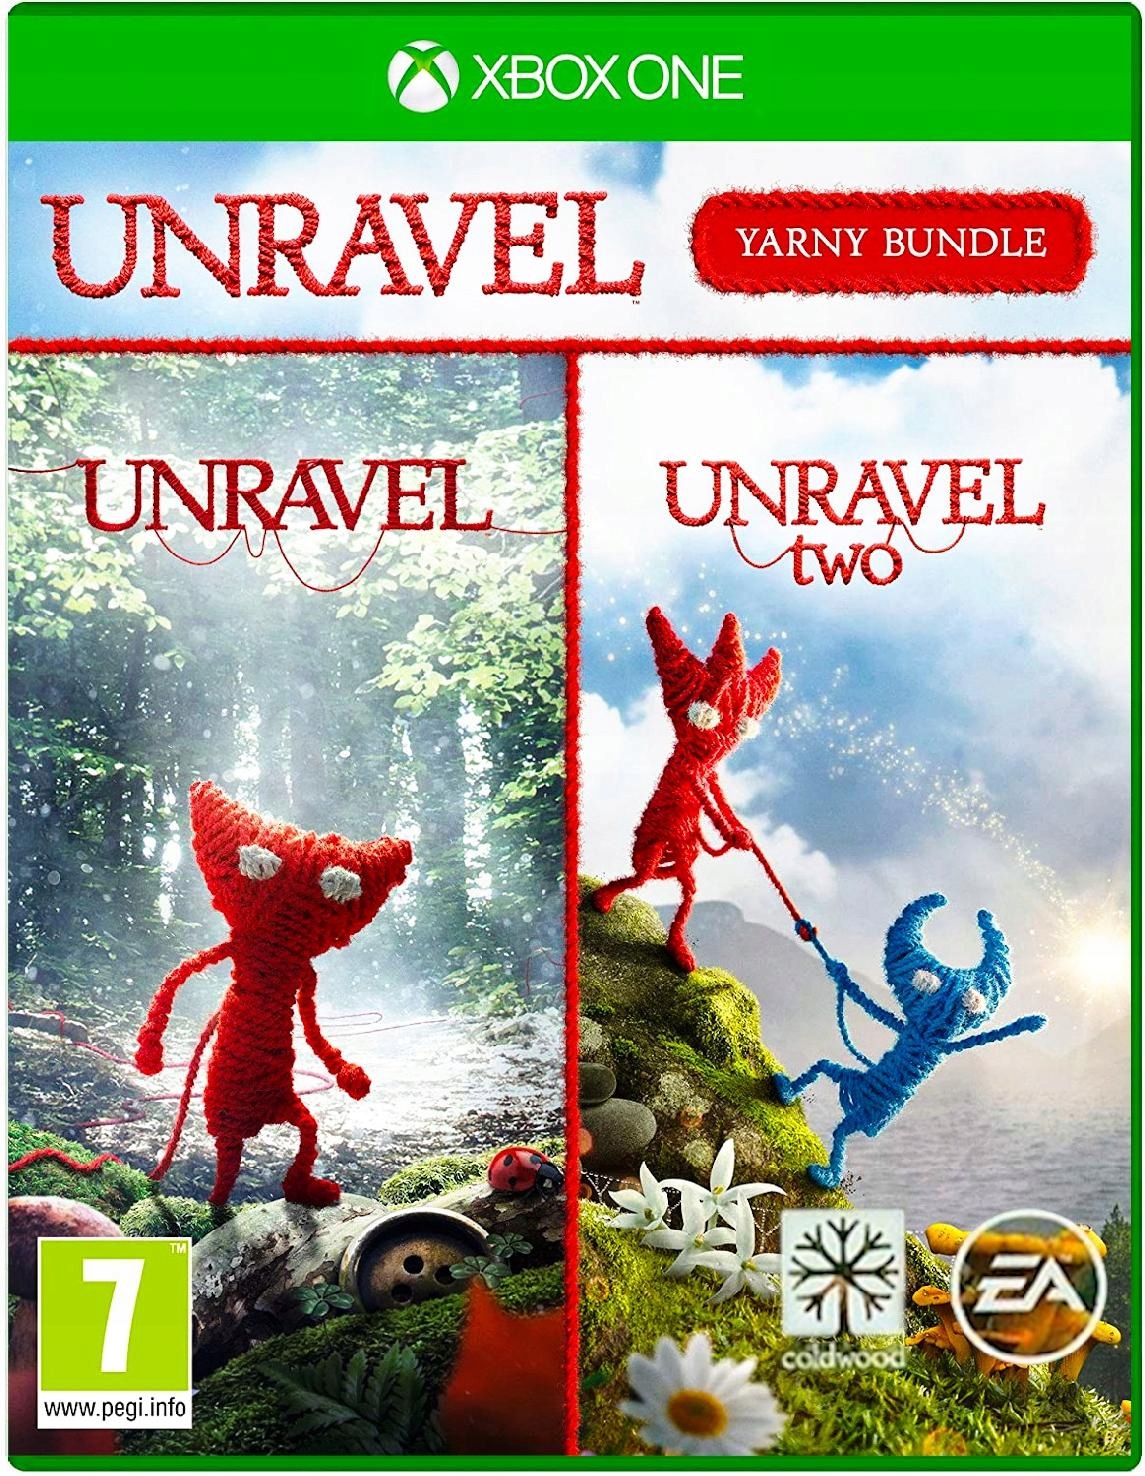 Prophet Sobriquette questionnaire Unravel Yarny Bundle Xbox One + Series X 2 Gry Two - 61,75 zł - Stan: nowy  - Gra zręcznościowa - 11136864936 - Allegro.pl